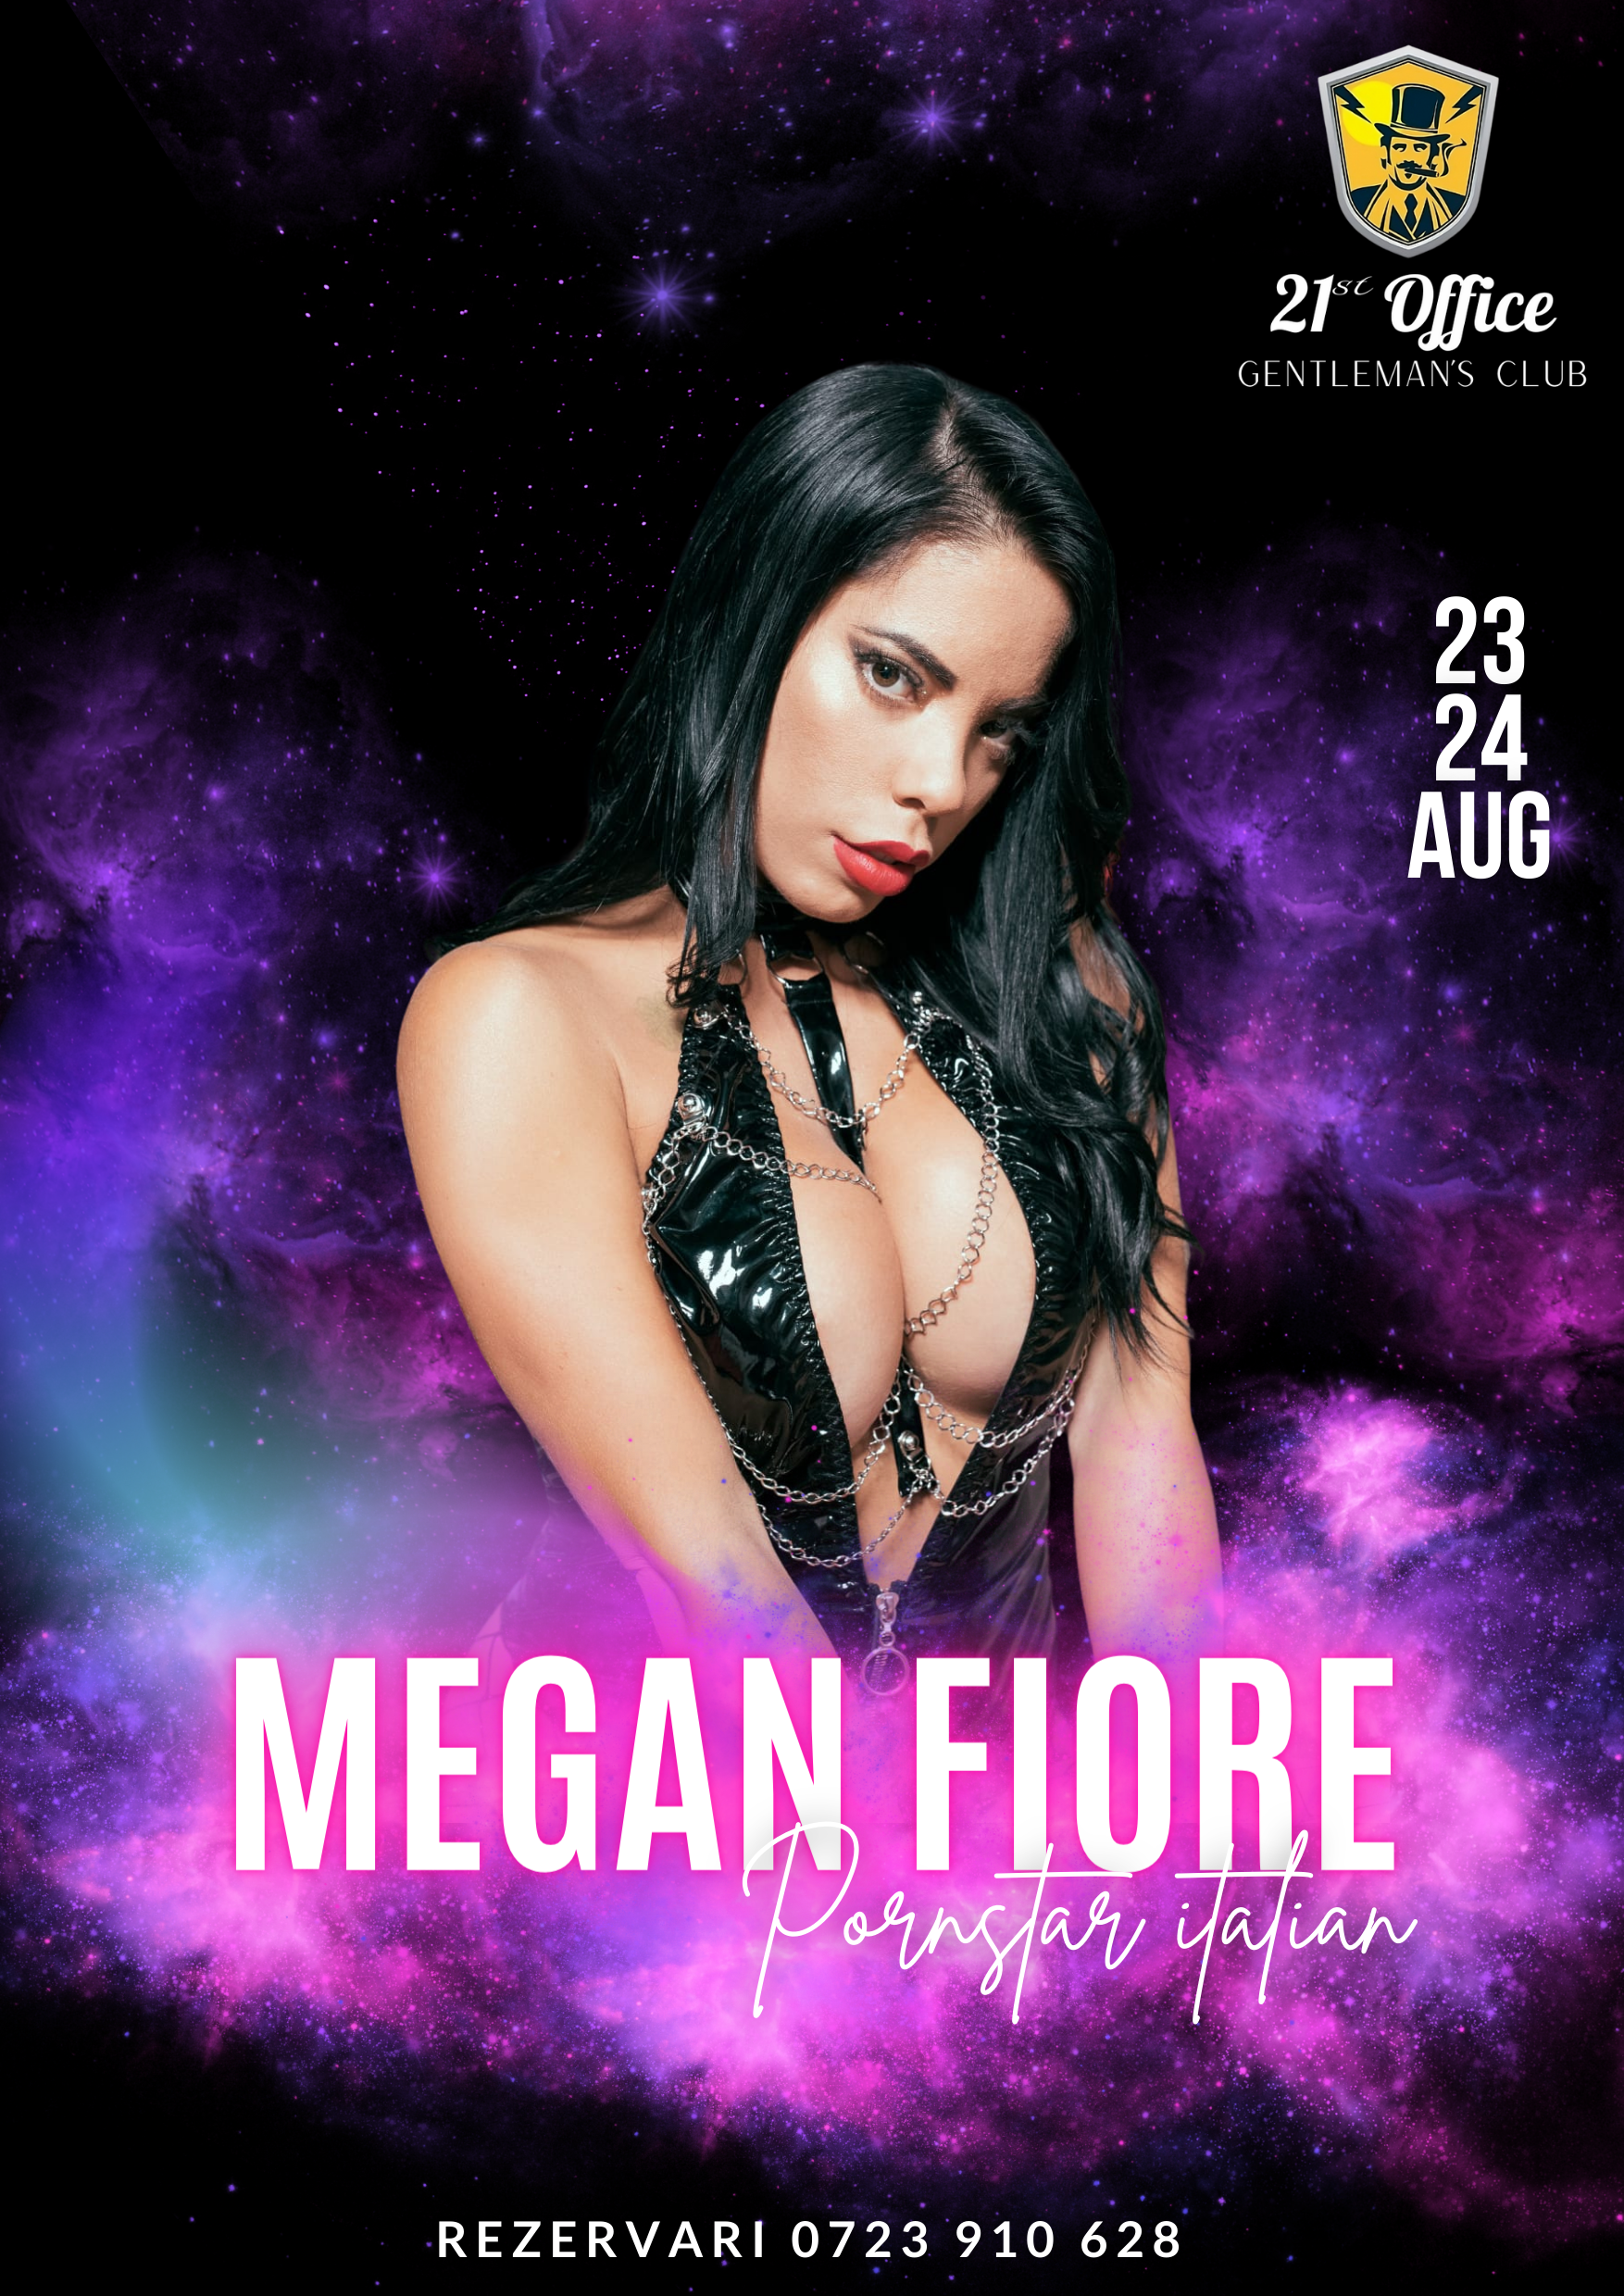 Show de striptease intretinut de pornstarul italian Megan Fiore pe 23 si 24 august la 21 Office Gentlemans Club